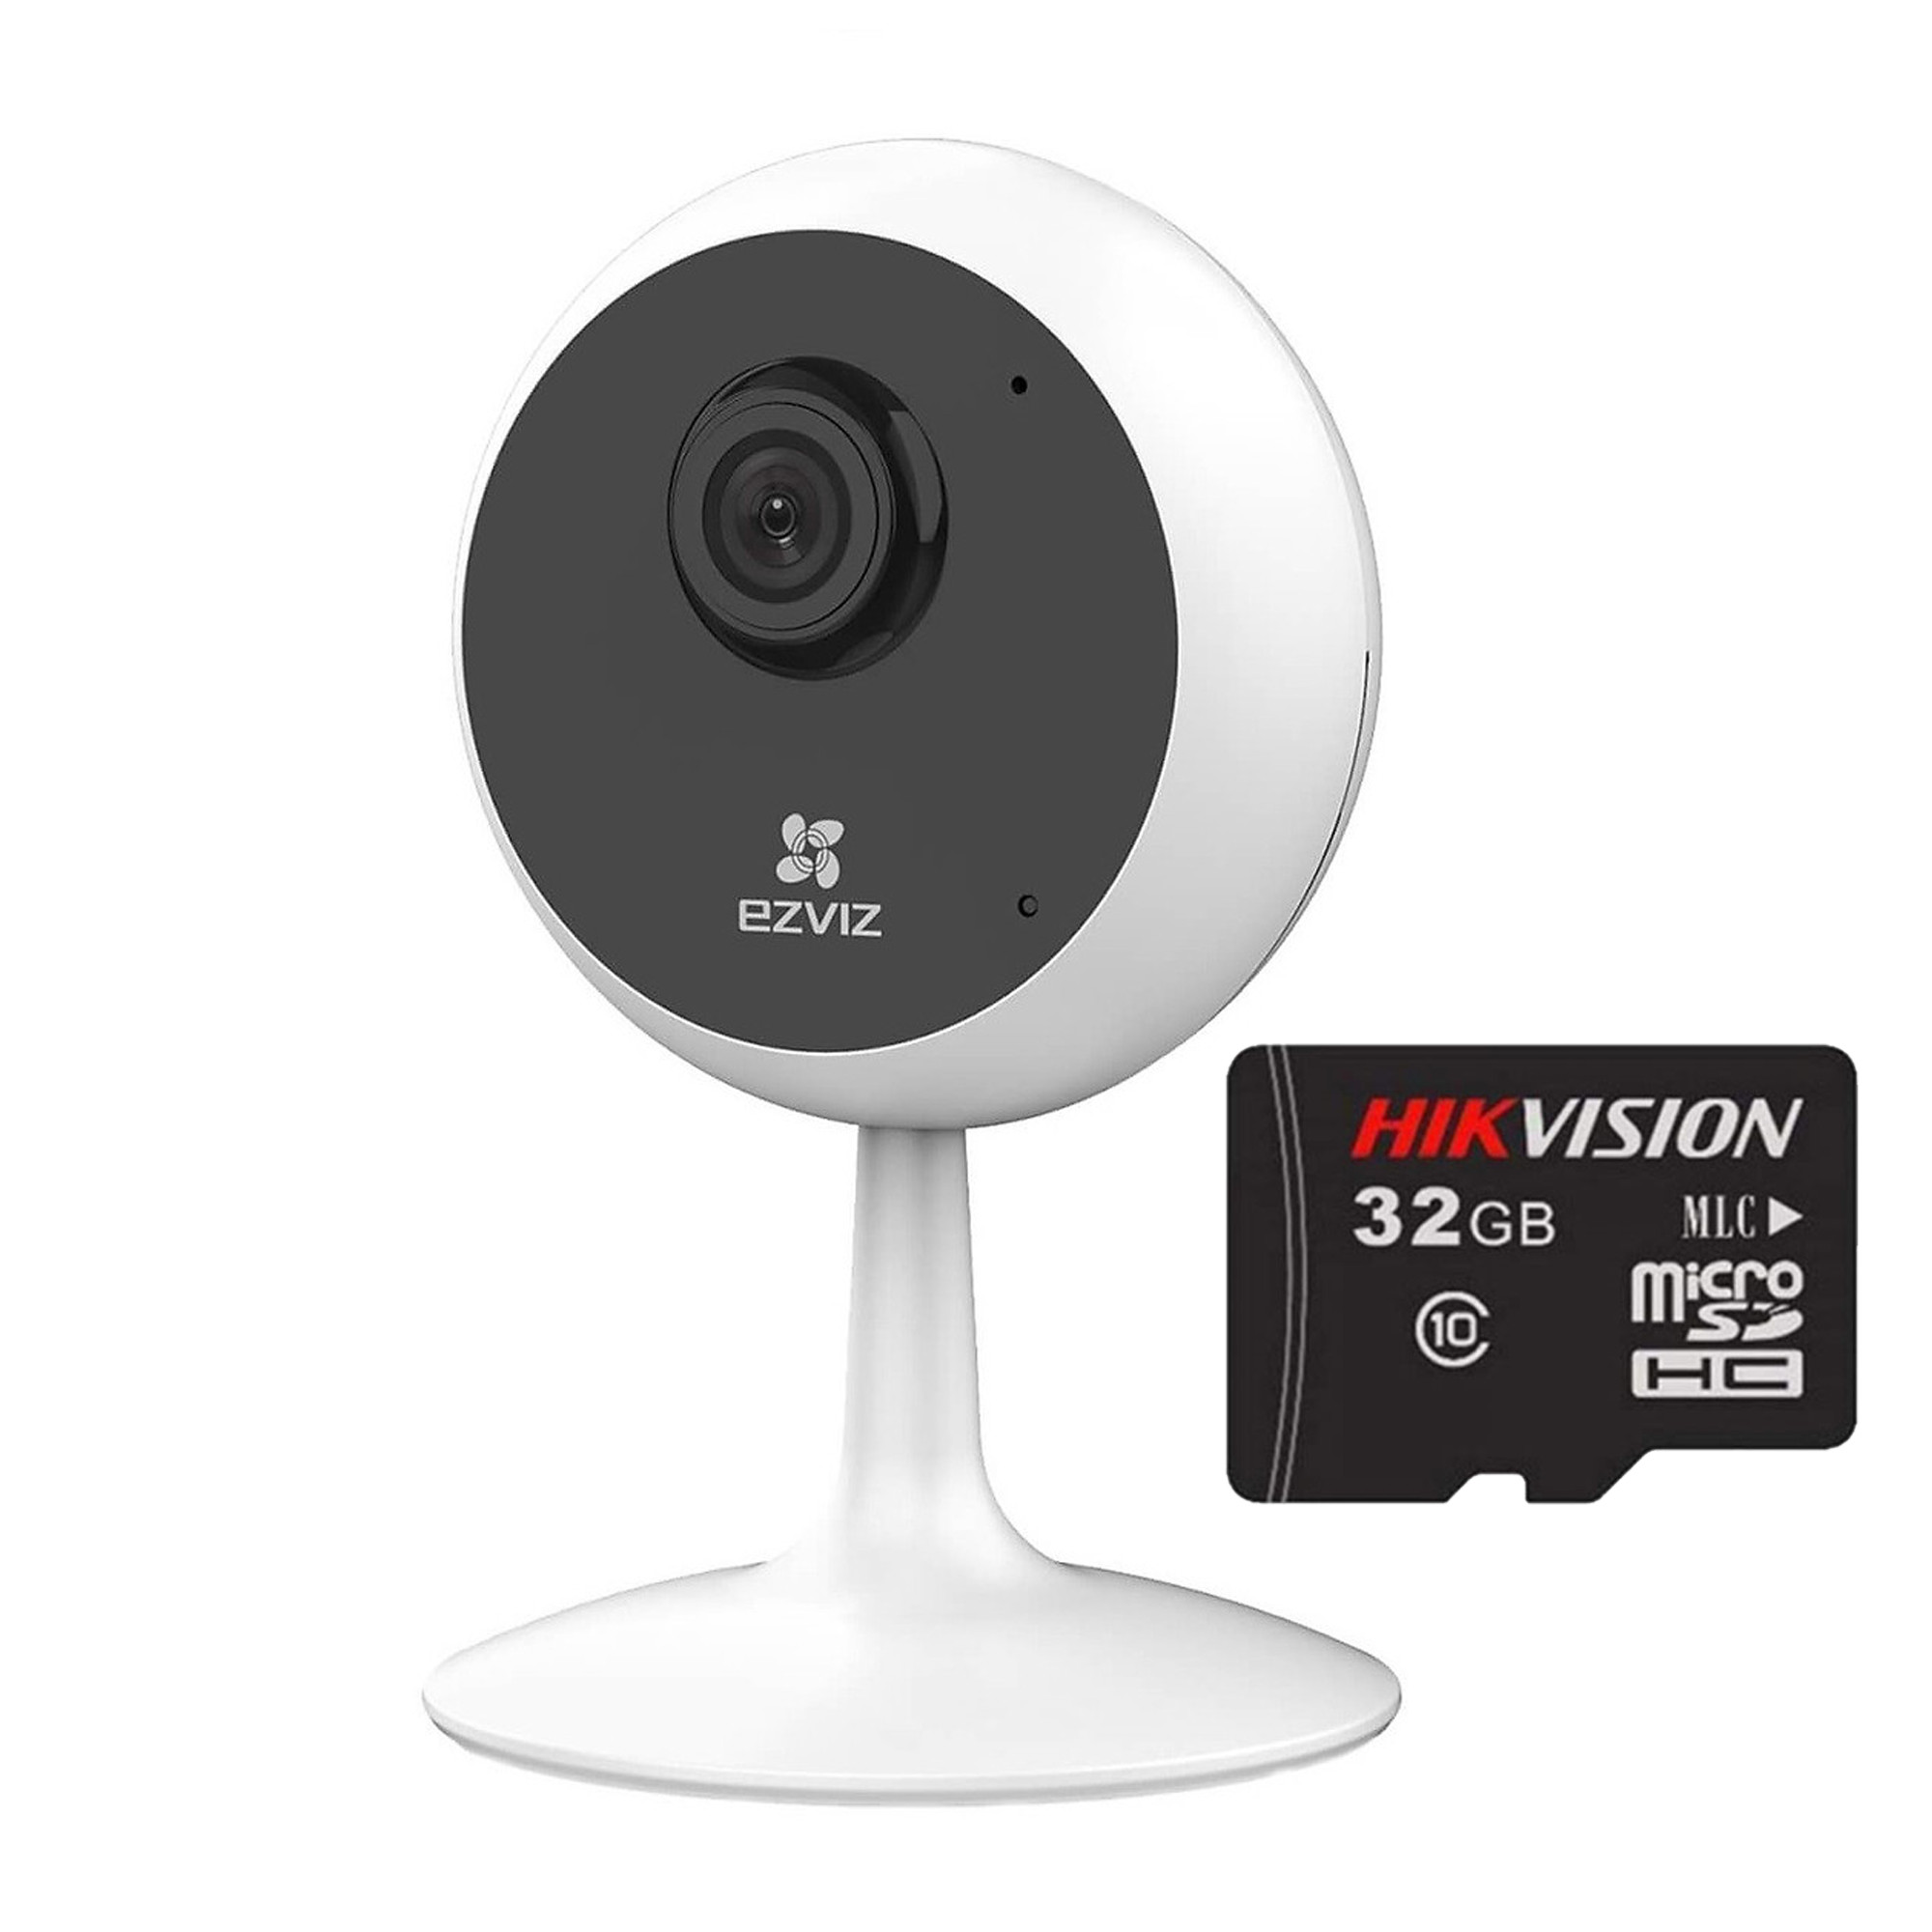 Trọn bộ Camera Ip Wifi Ezviz Cube C1C Full HD 1080P Và Thẻ Nhớ HIKVISION 32GB - Hàng Chính Hãng